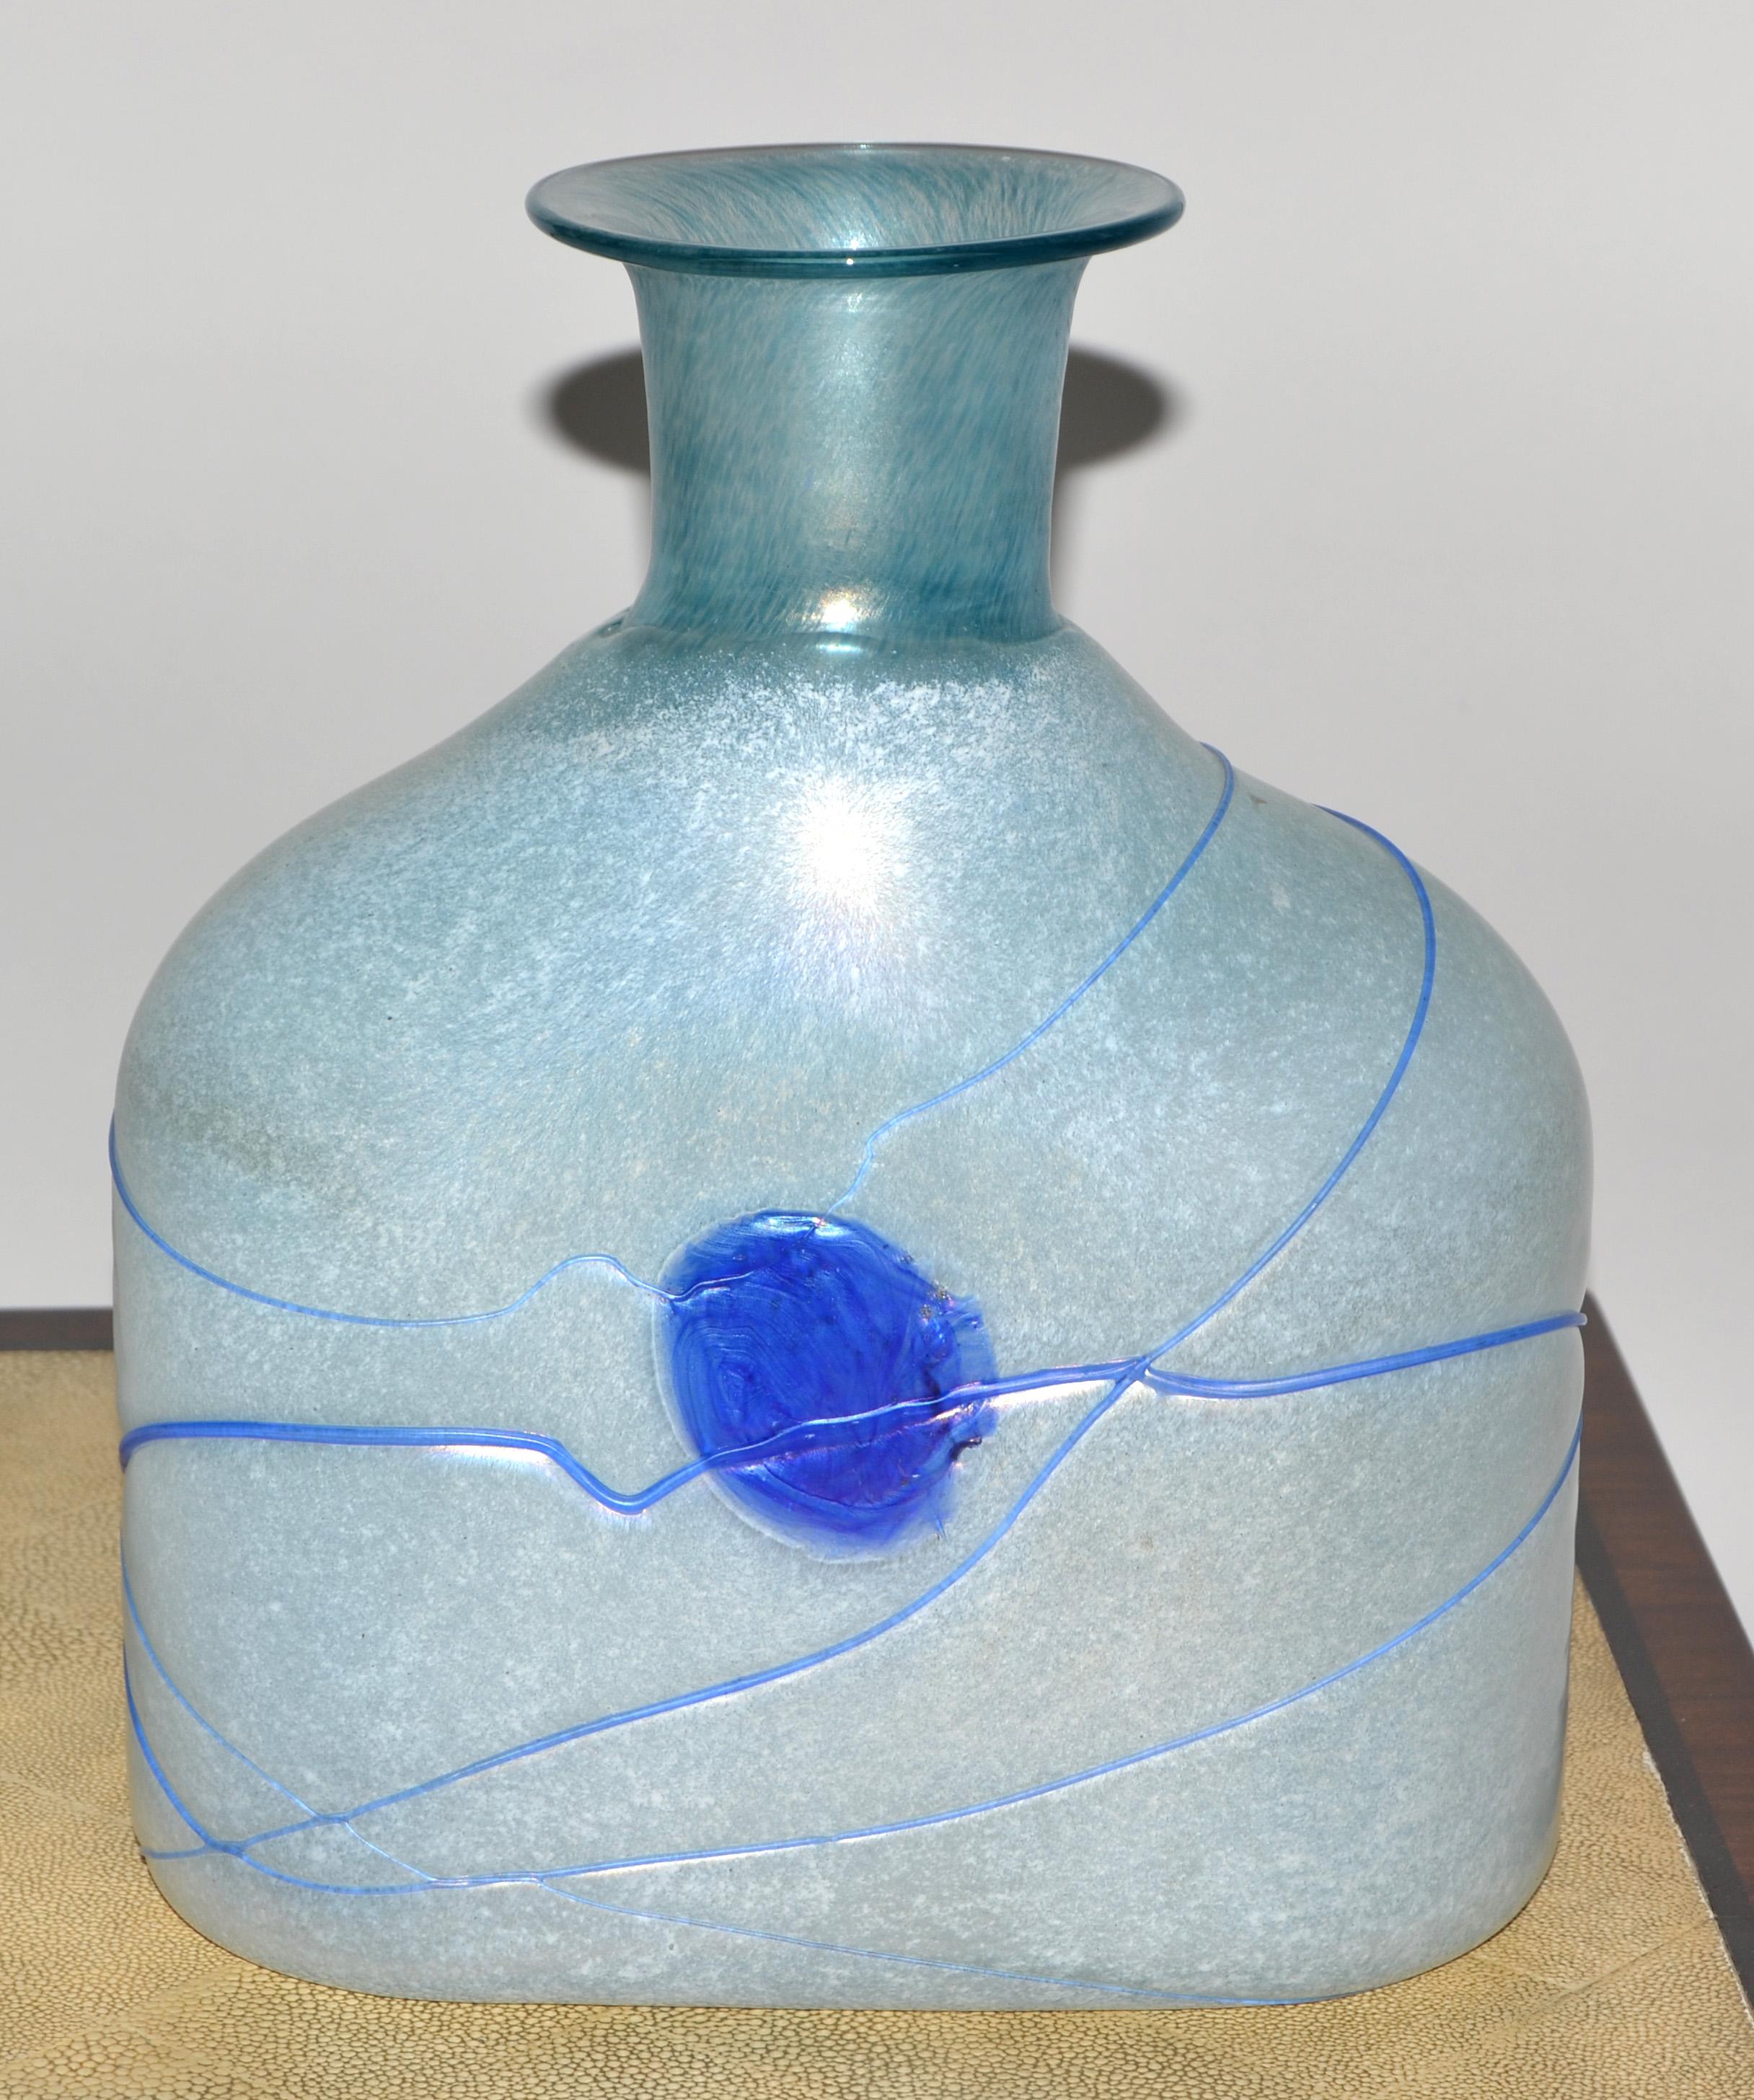 Kosta Boda Bertil Vallien Blue Galaxy Art Glass Vase Decanter Scandinavian 1950  For Sale 1